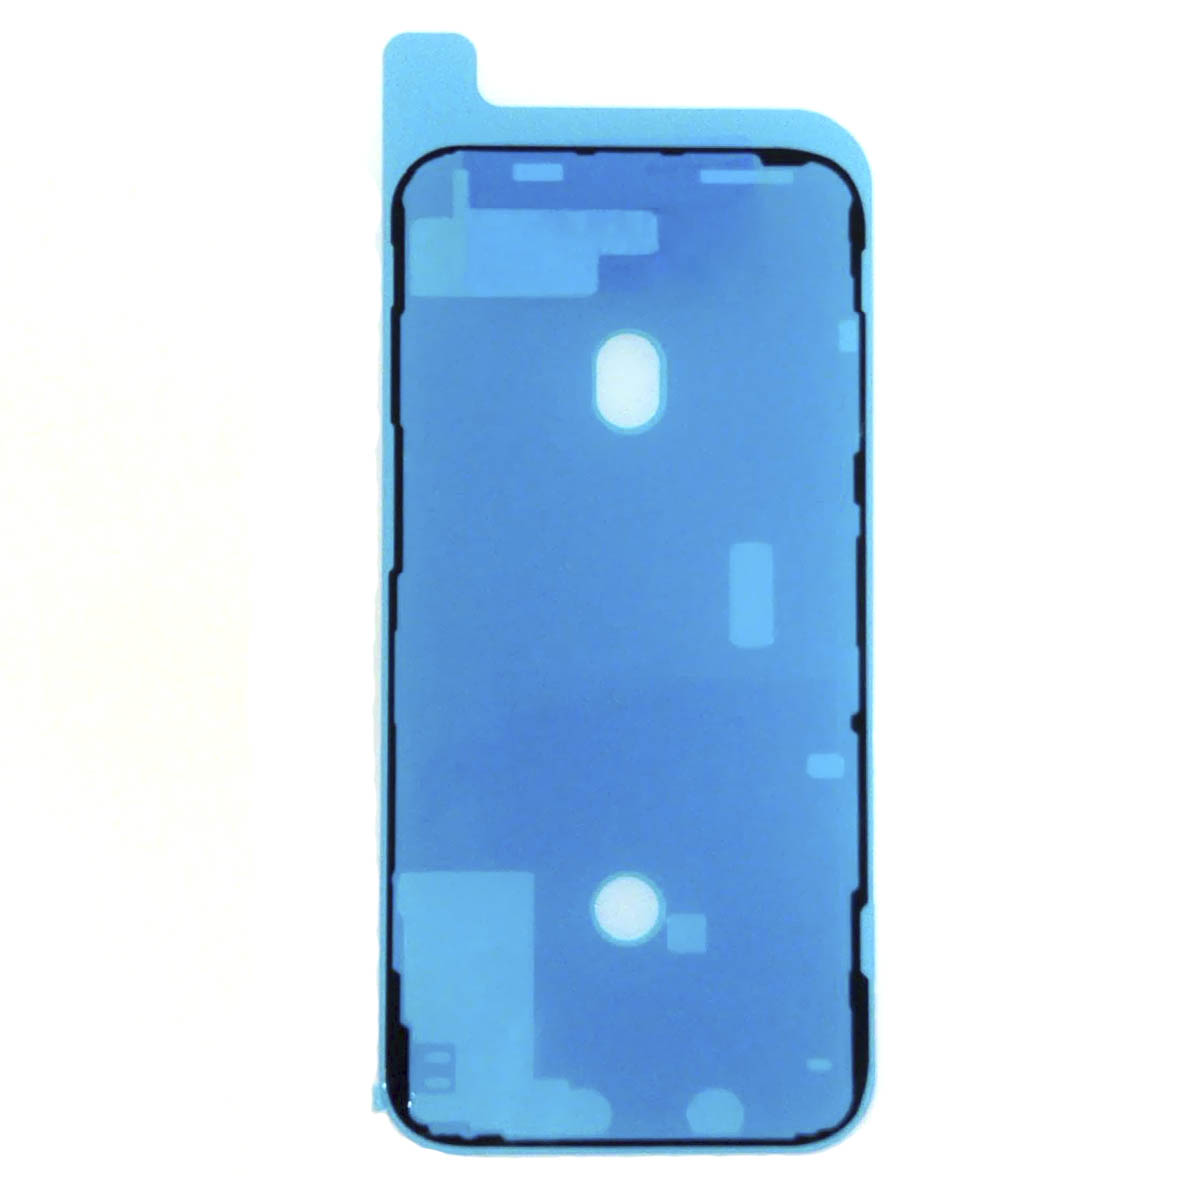 Пыле и влагозащитная прокладка, скотч сборки для APPLE iPhone 12 Pro Max, цвет черный